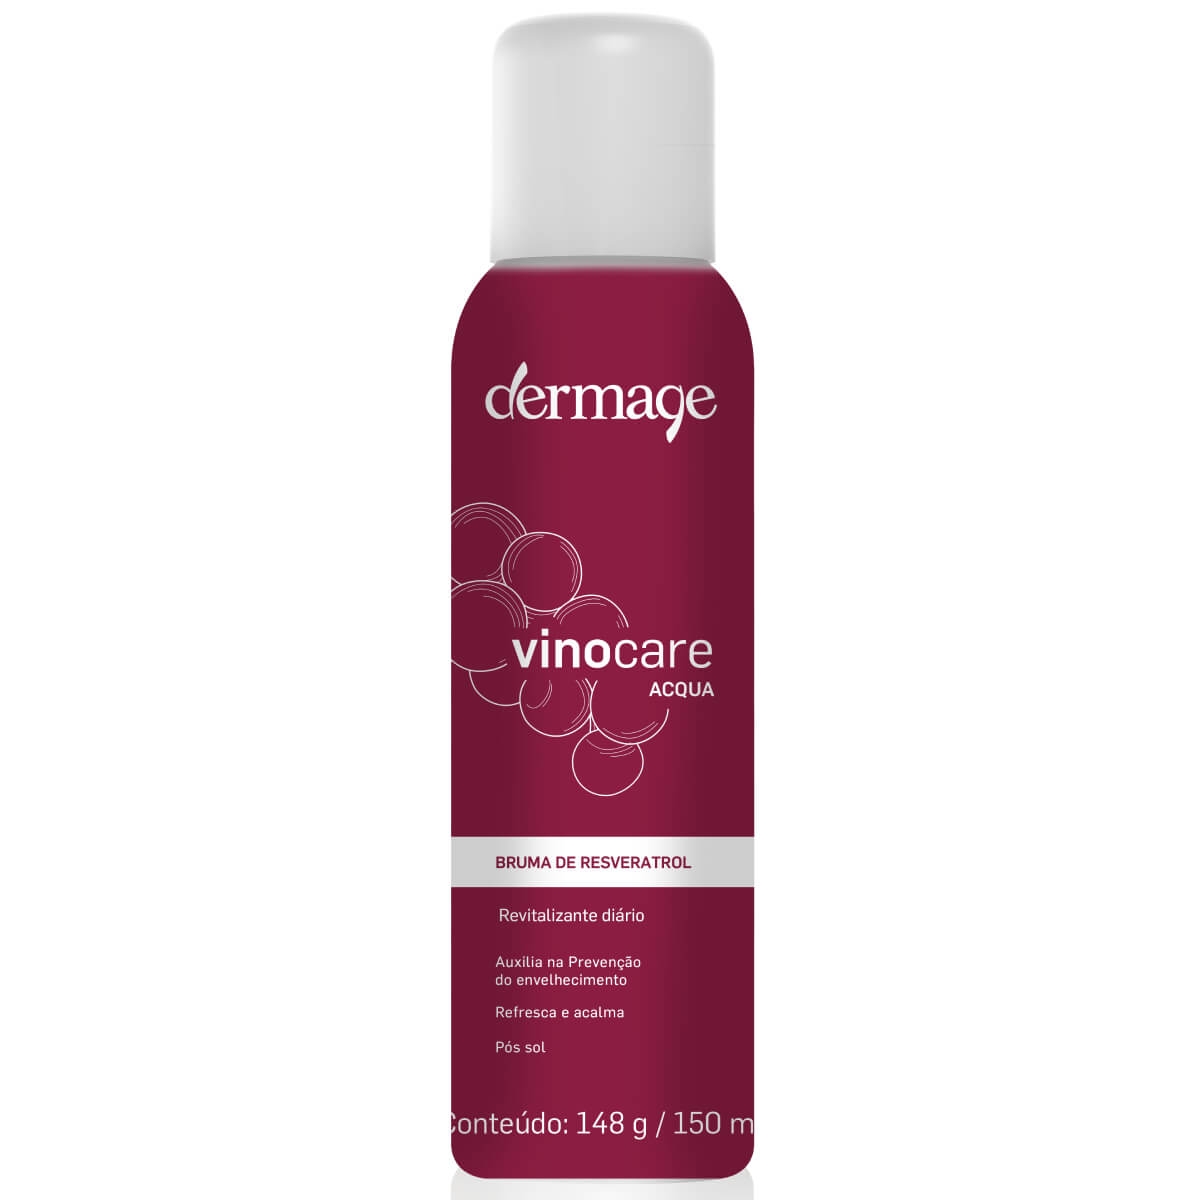 Bruma Antioxidante Dermage Vinocare Acqua 150ml